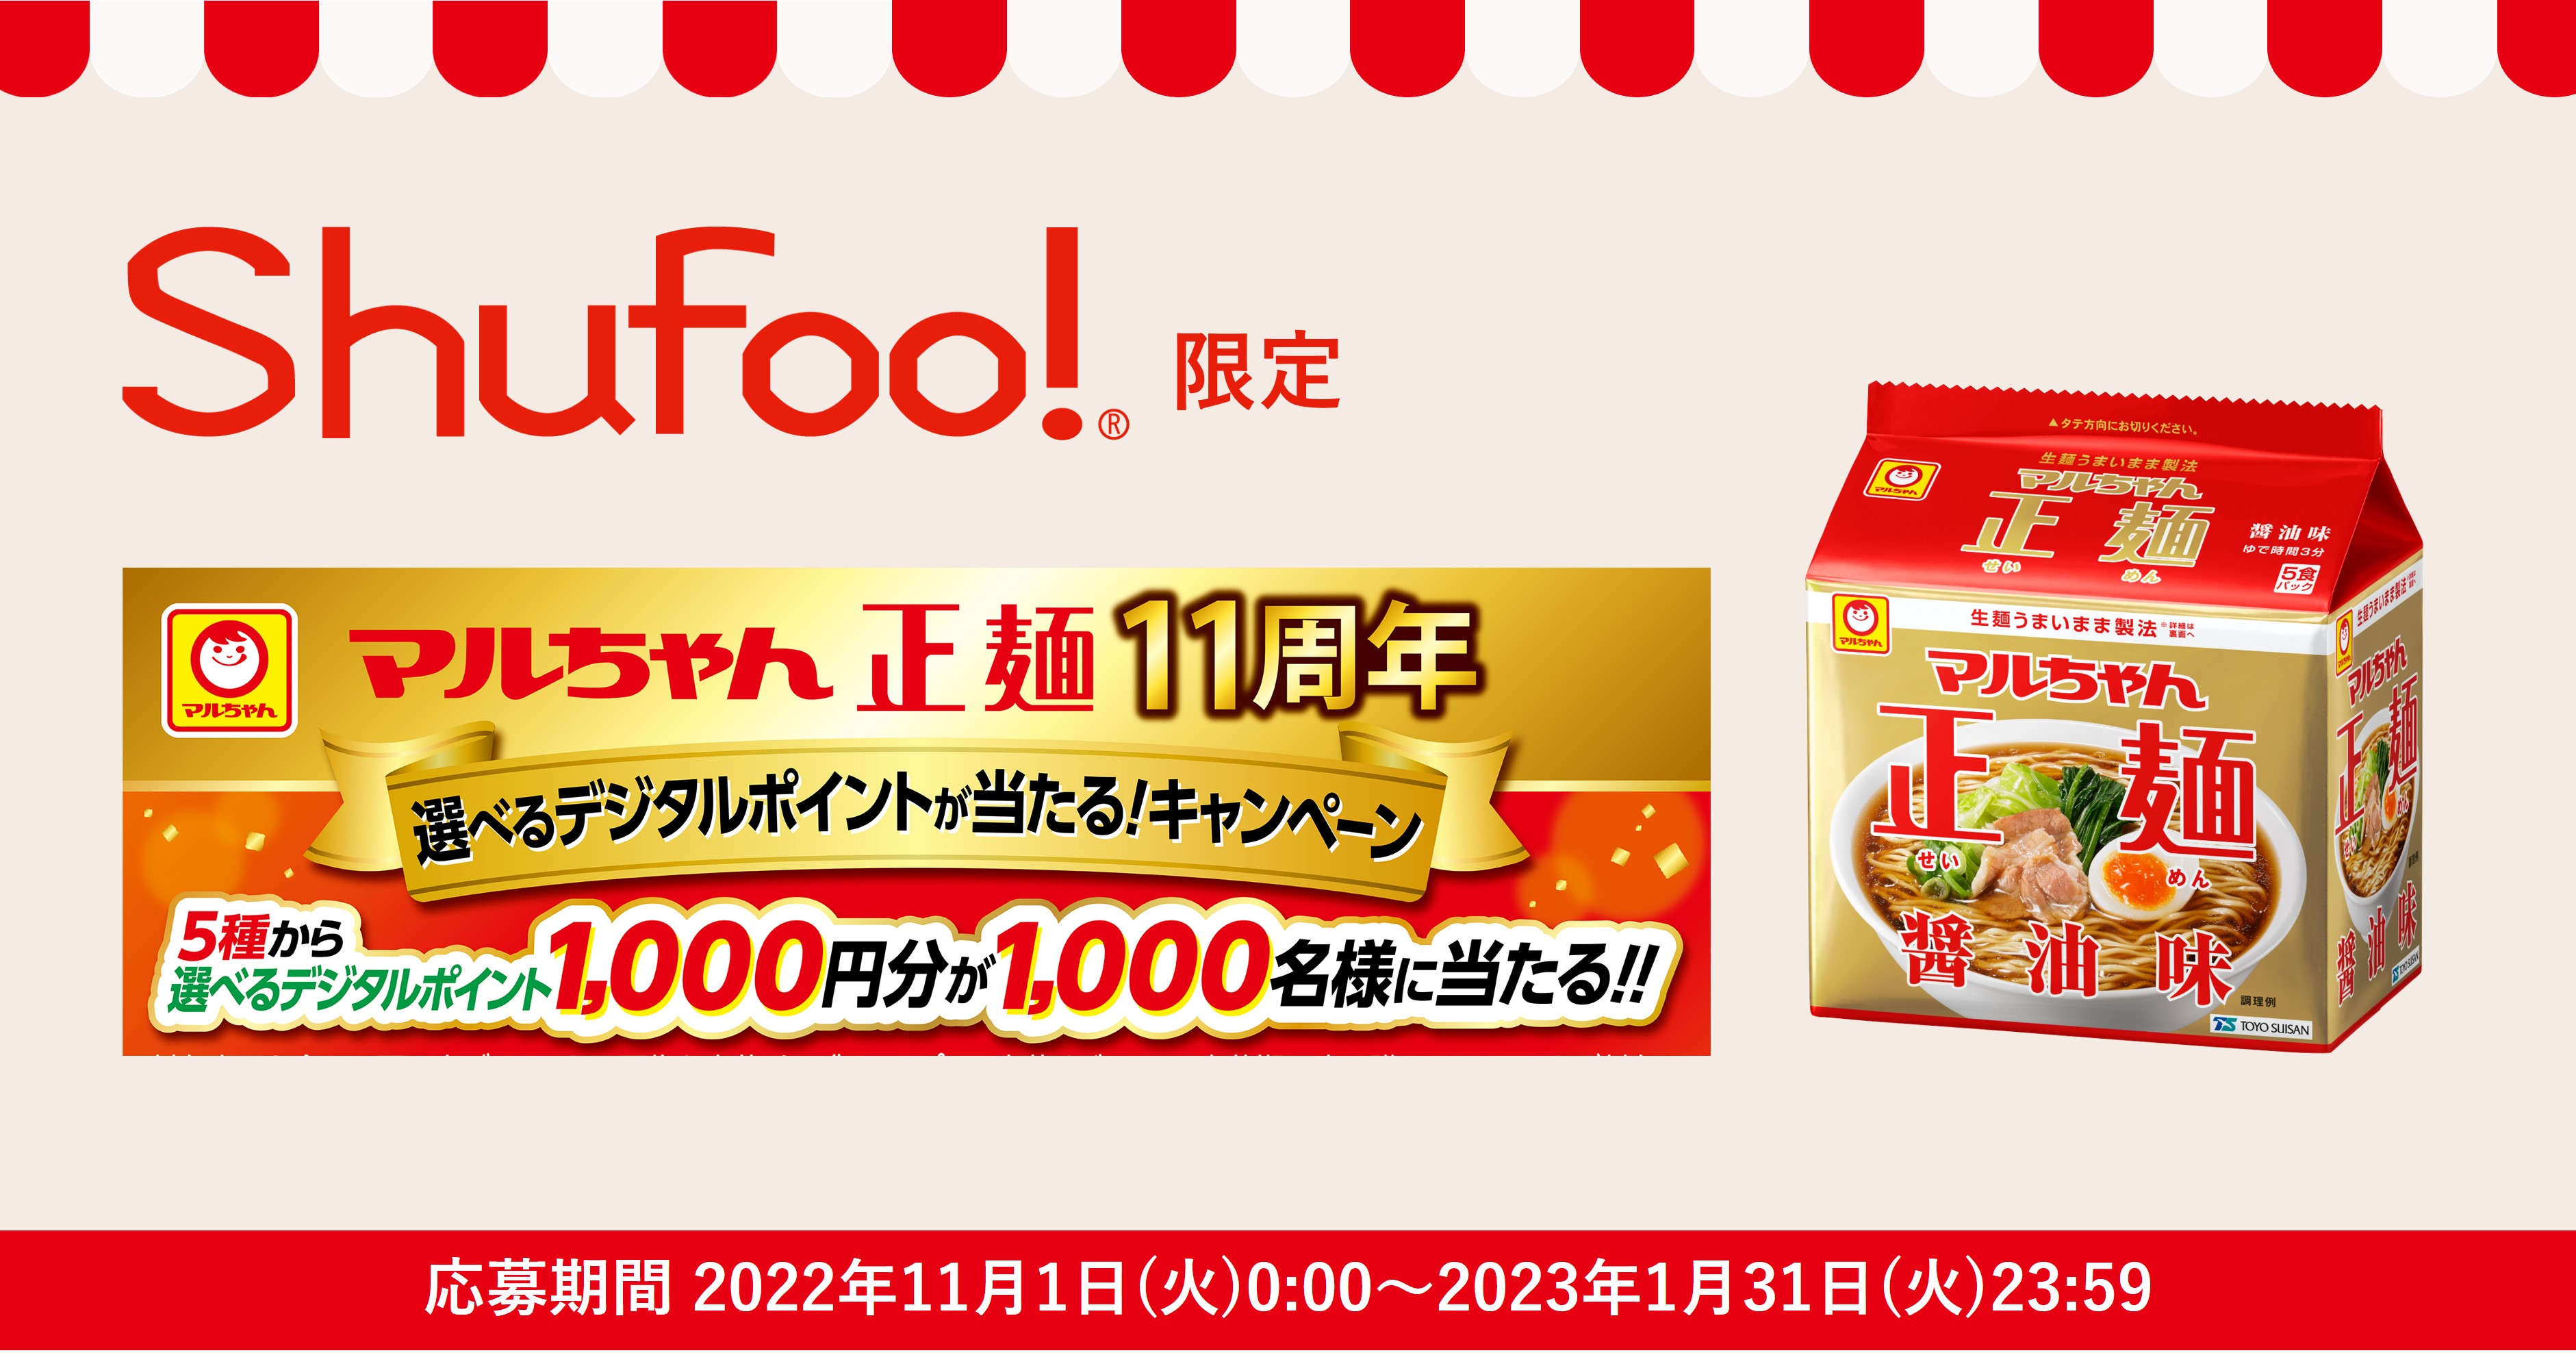 「マルちゃん正麺」を購入したレシートを「Shufoo!」から応募すると デジタルポイントが当たる…